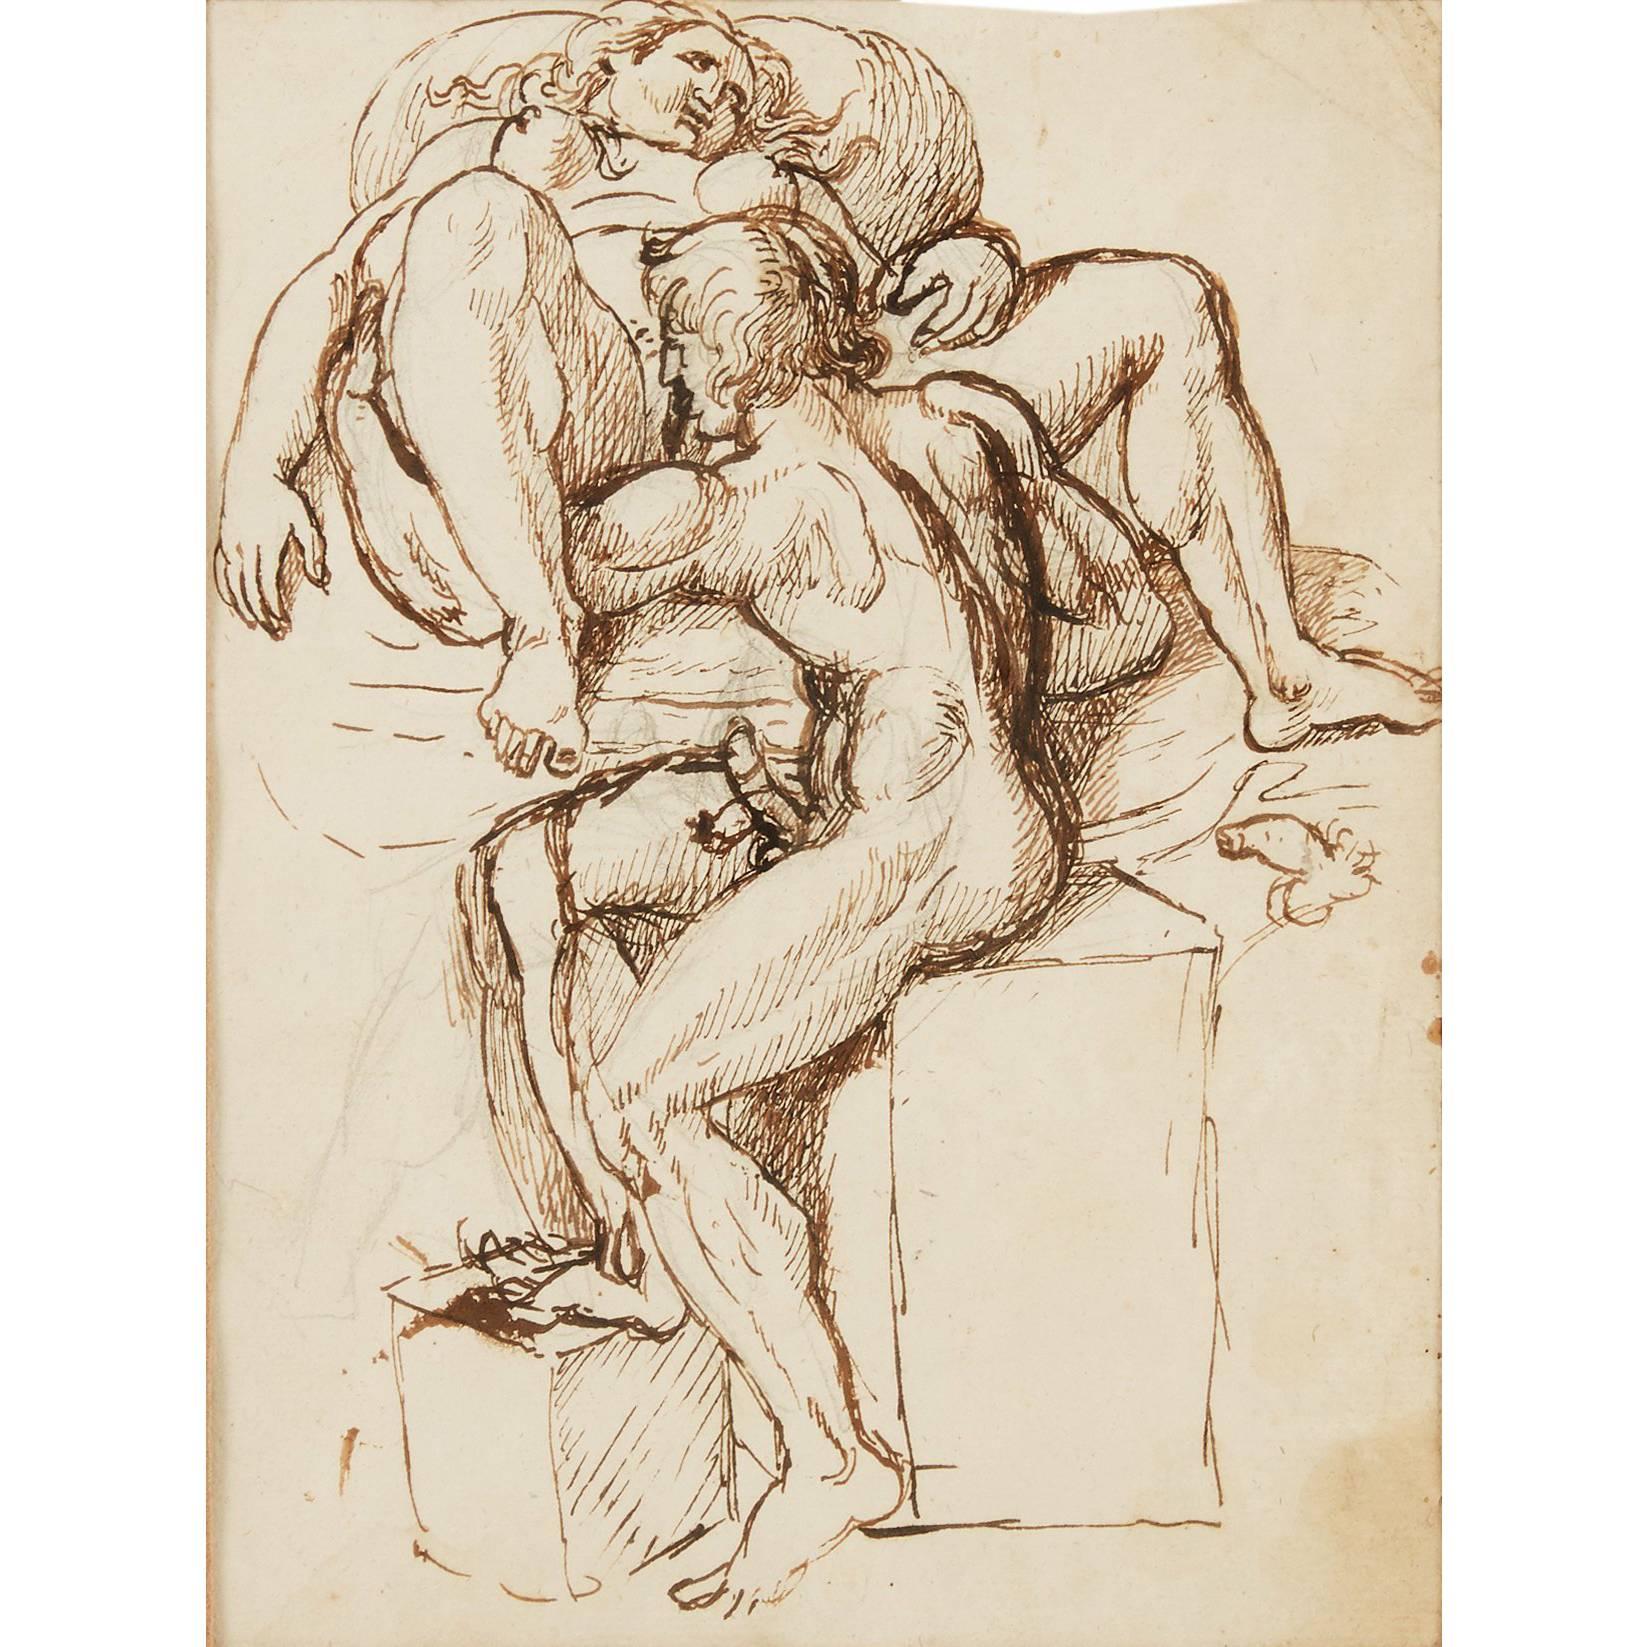 Seltene erotische Zeichnung aus dem 18. Jahrhundert, Tobias Sergel zugeschrieben